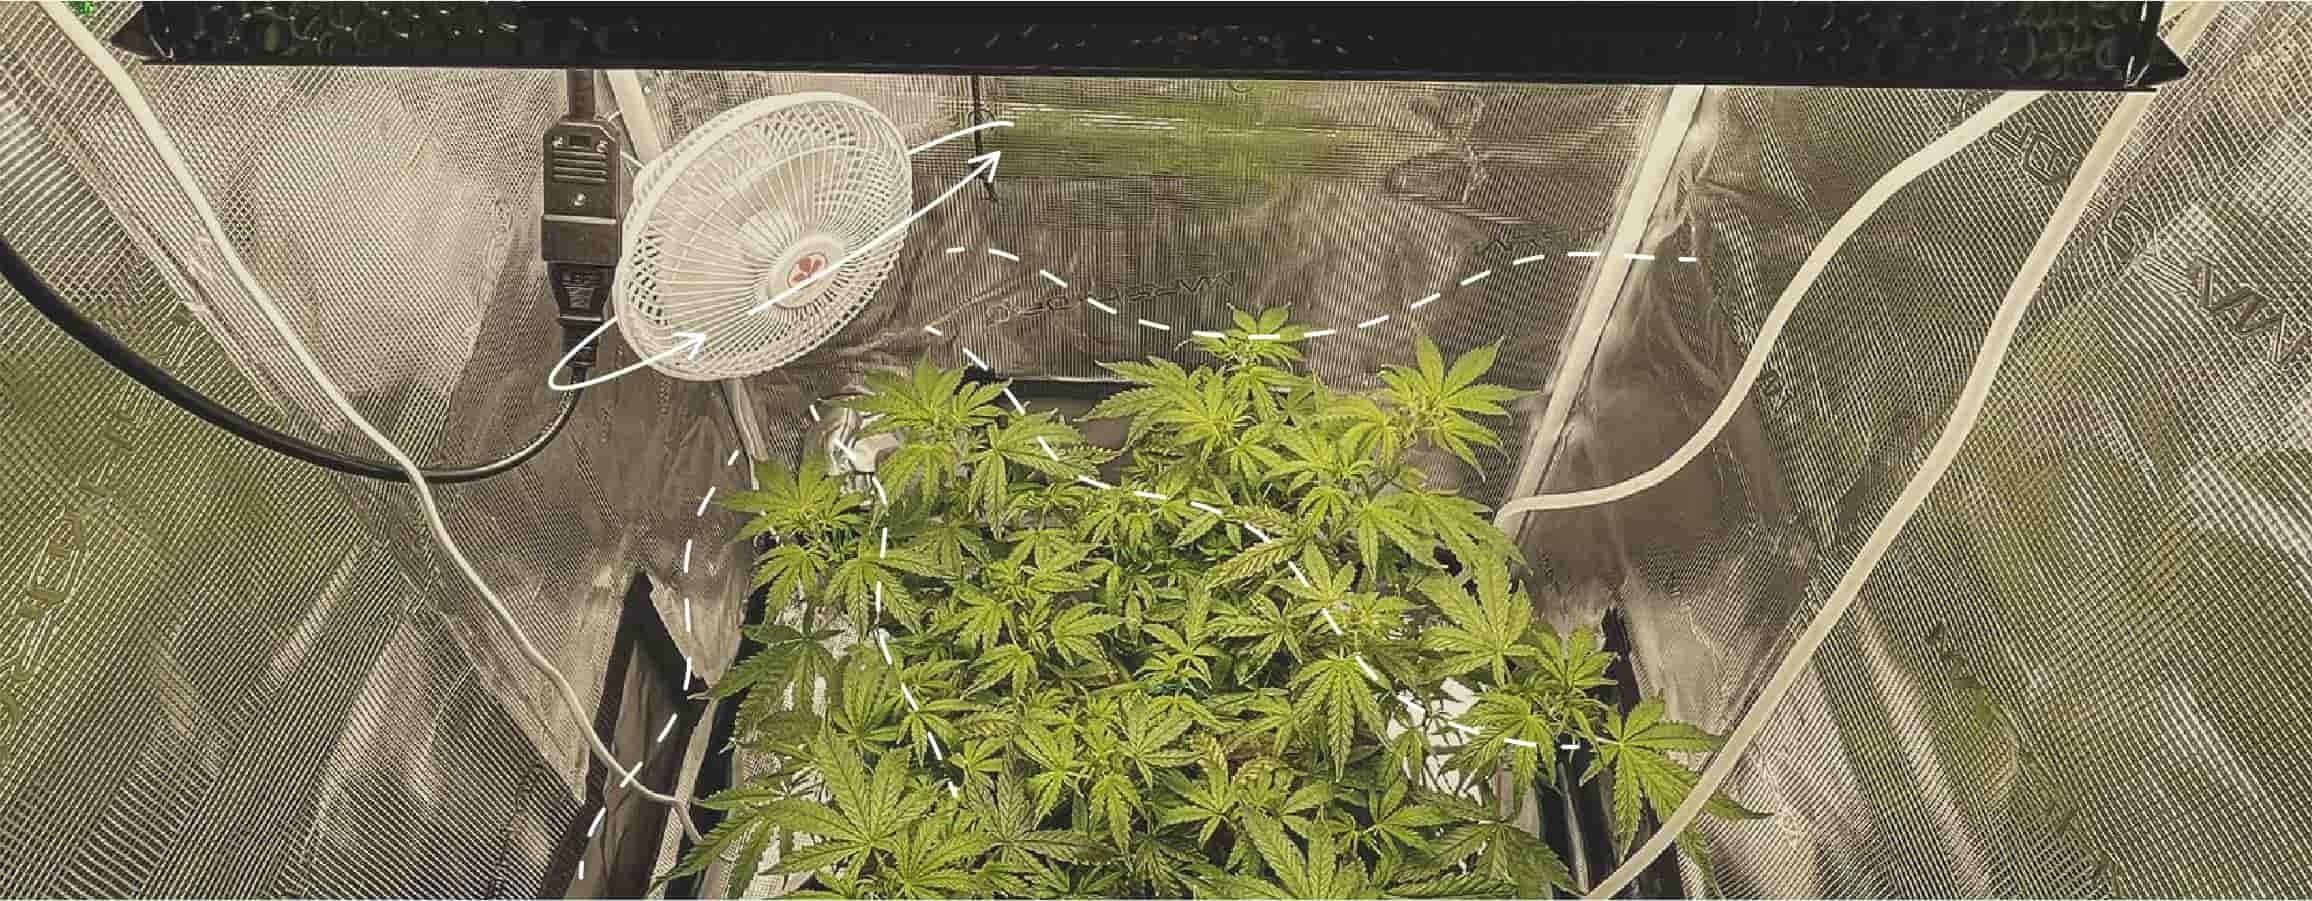 Prévenir la brûlure du vent sur le cannabis en intérieur